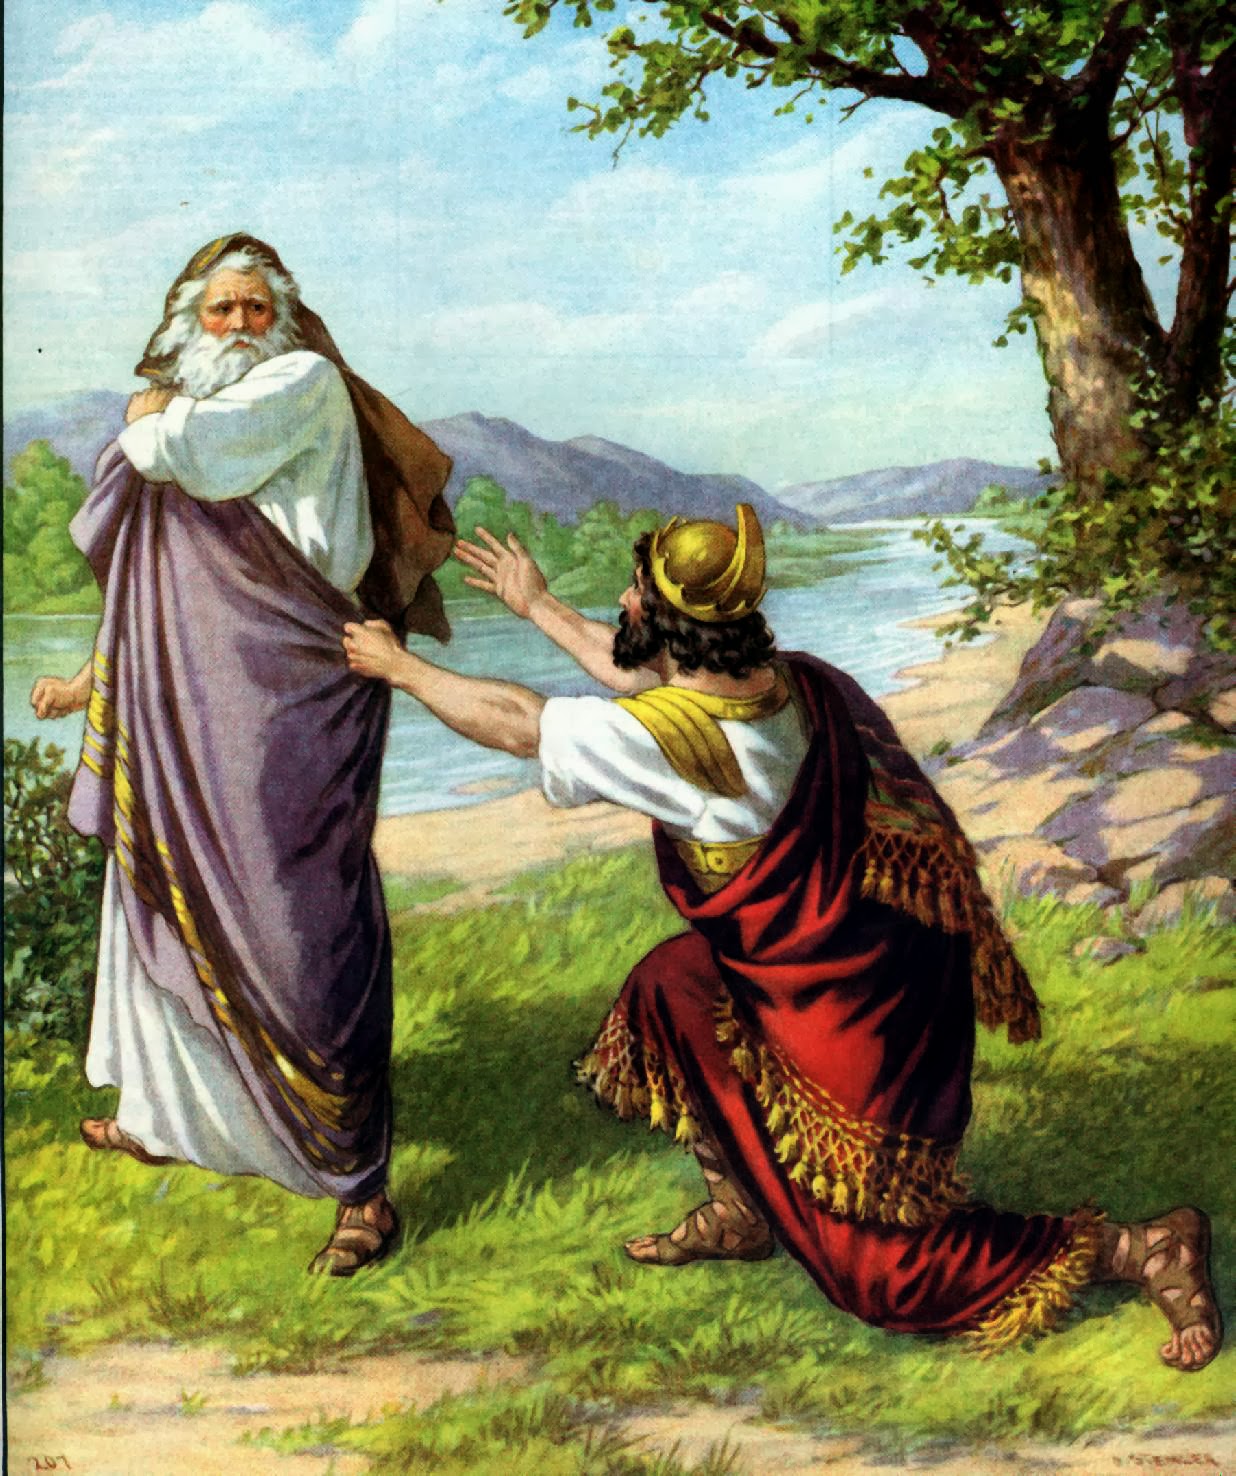 Lição 5 • 1 Samuel 8 a 15, Saul, o primeiro rei de Israel 